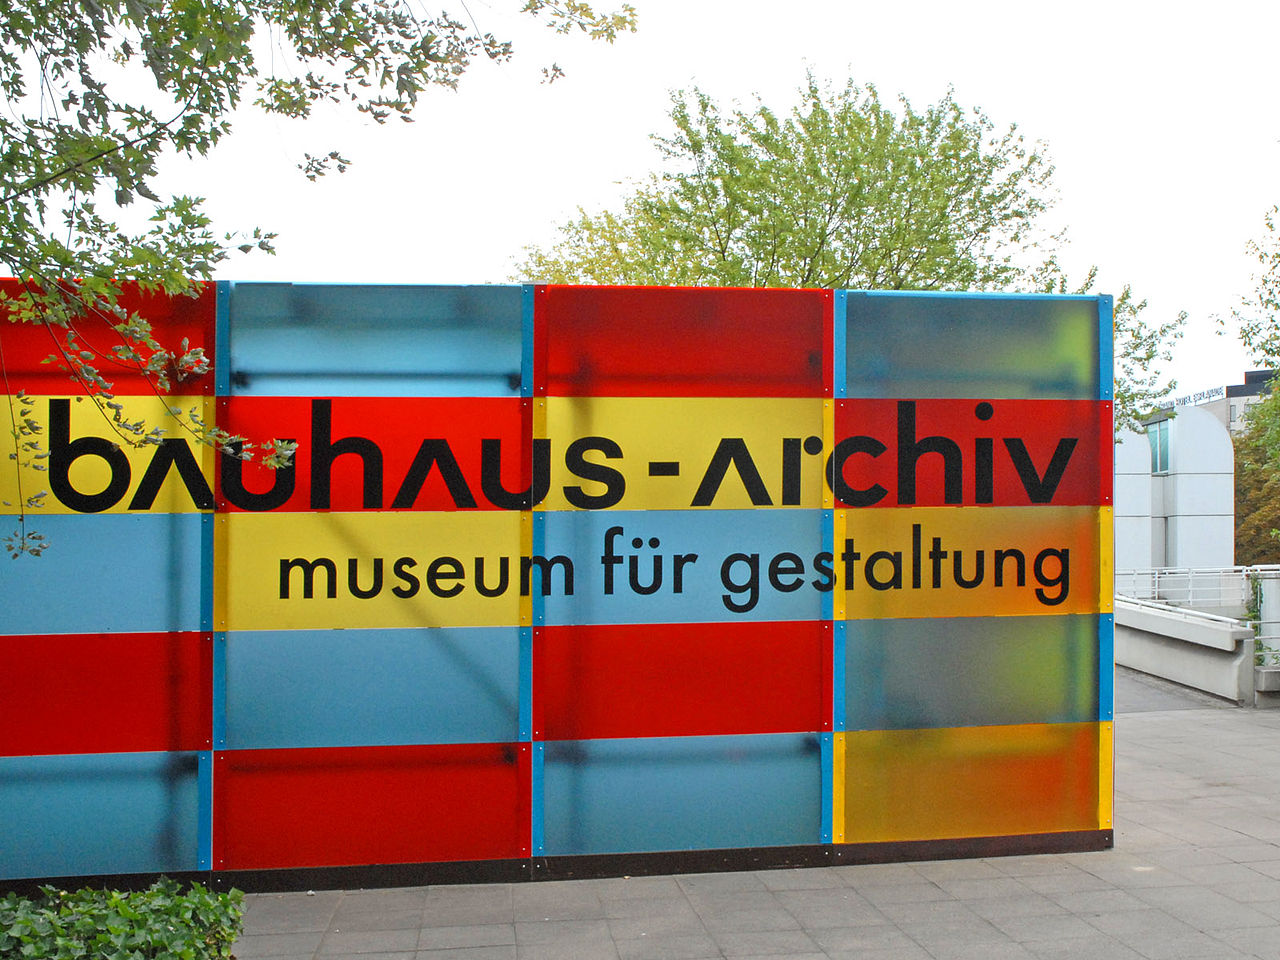 Les Archives Du Bauhaus - Bauhaus Archives Museum Berlin , HD Wallpaper & Backgrounds